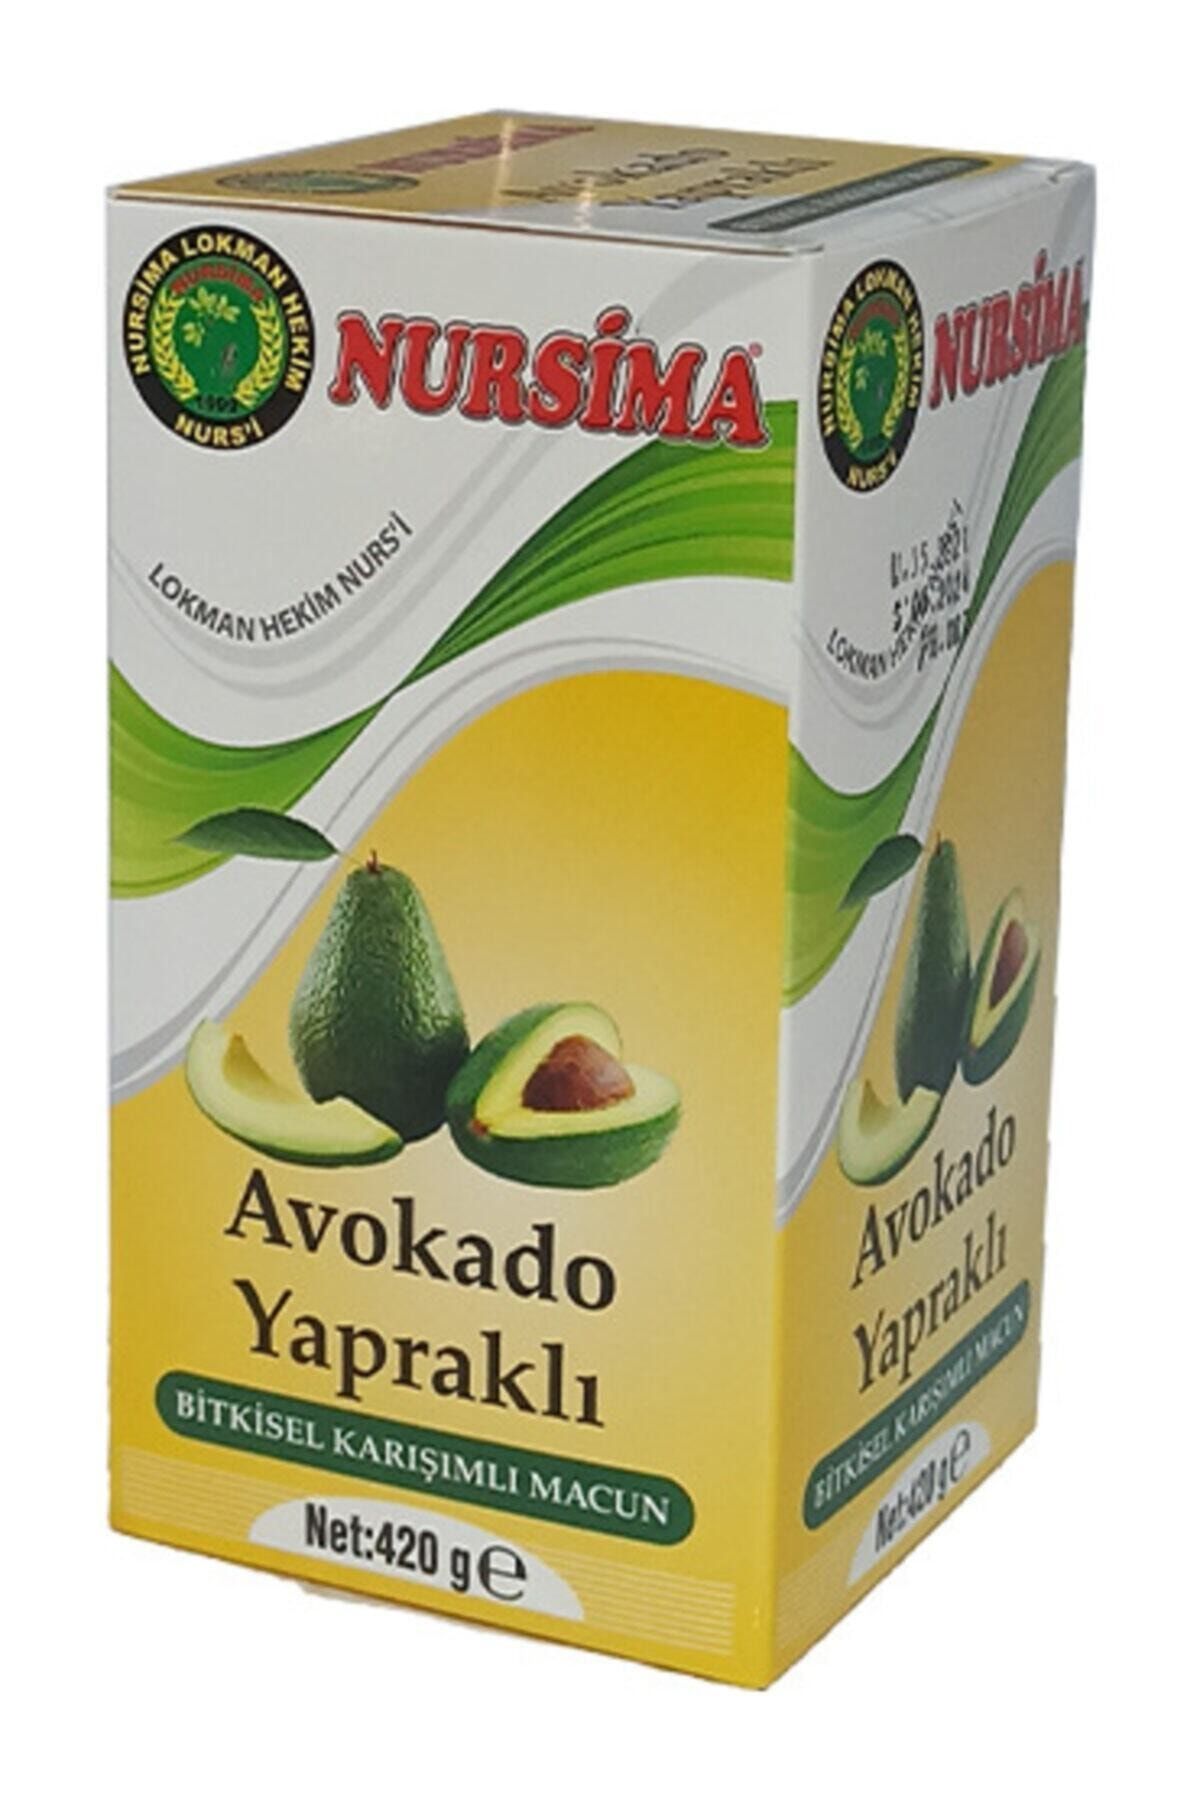 Nursima Avakado Yapraklı Bitkisel Karışımlı Macun 420 Gr